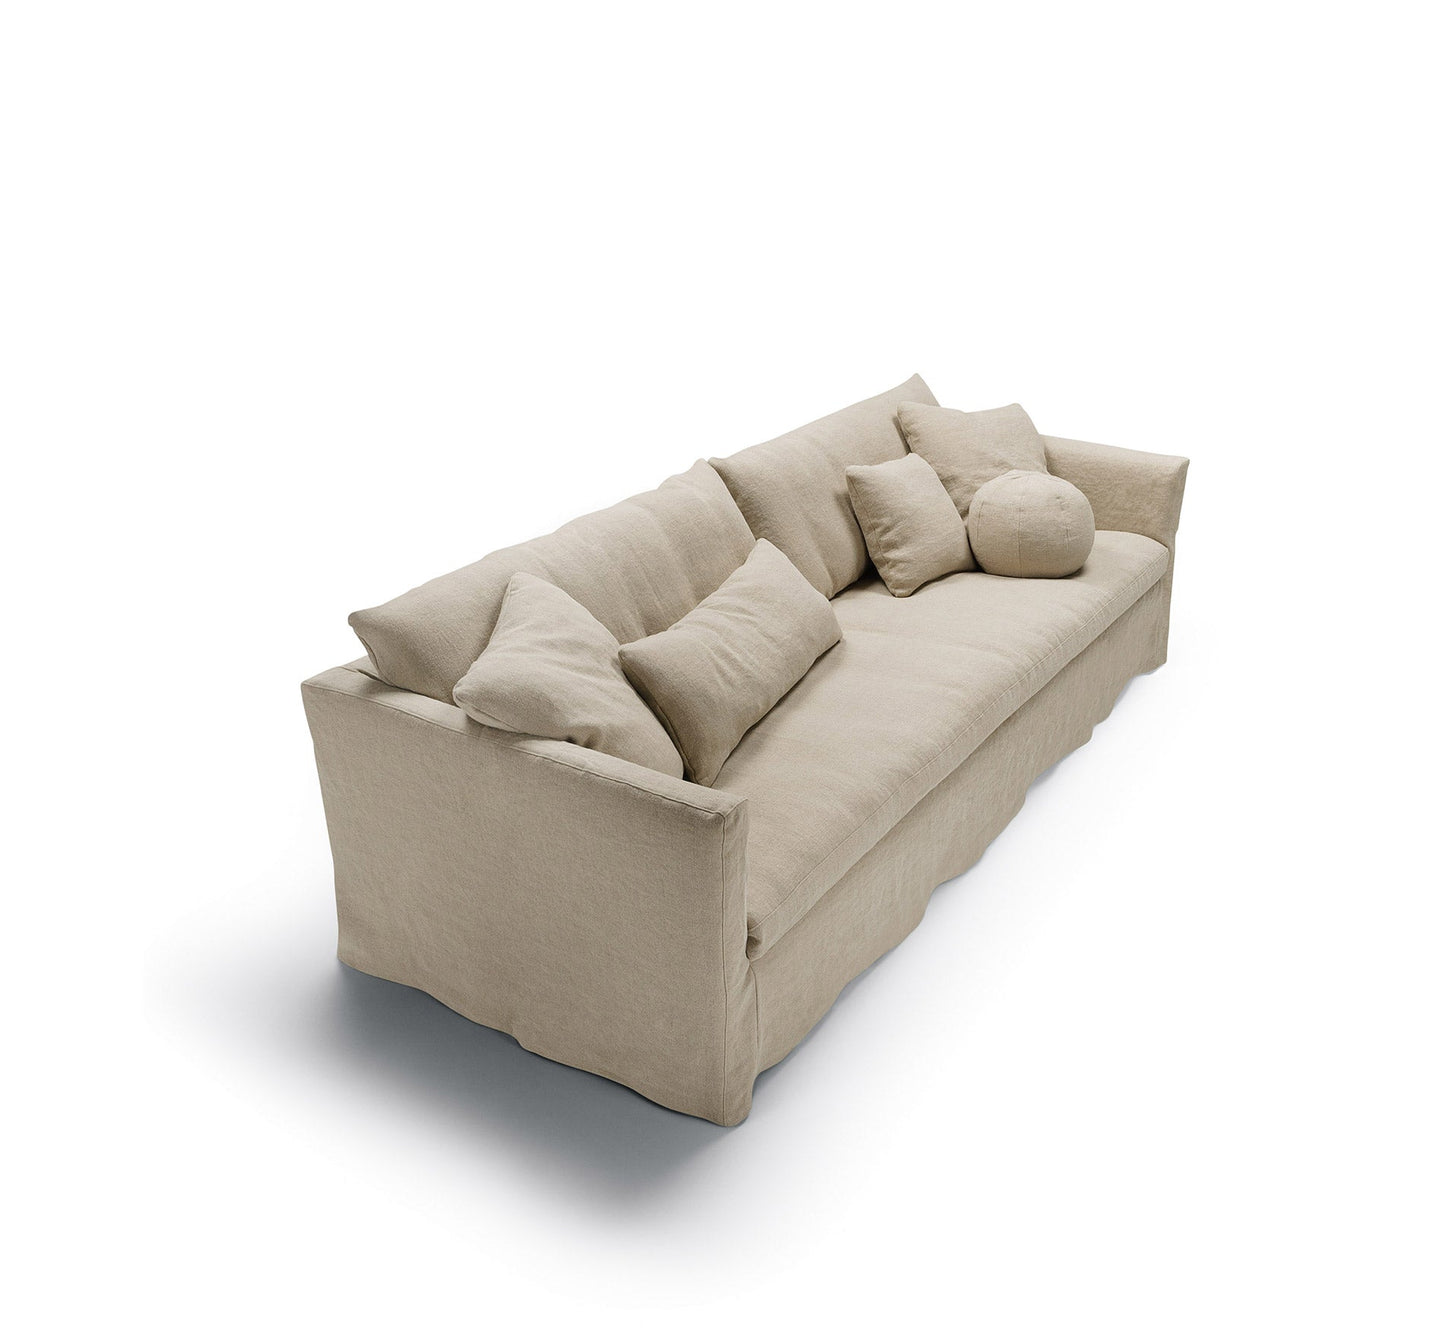 Lill 4-seter sofa, en del av kategorien 4-seter - At Home Interiør